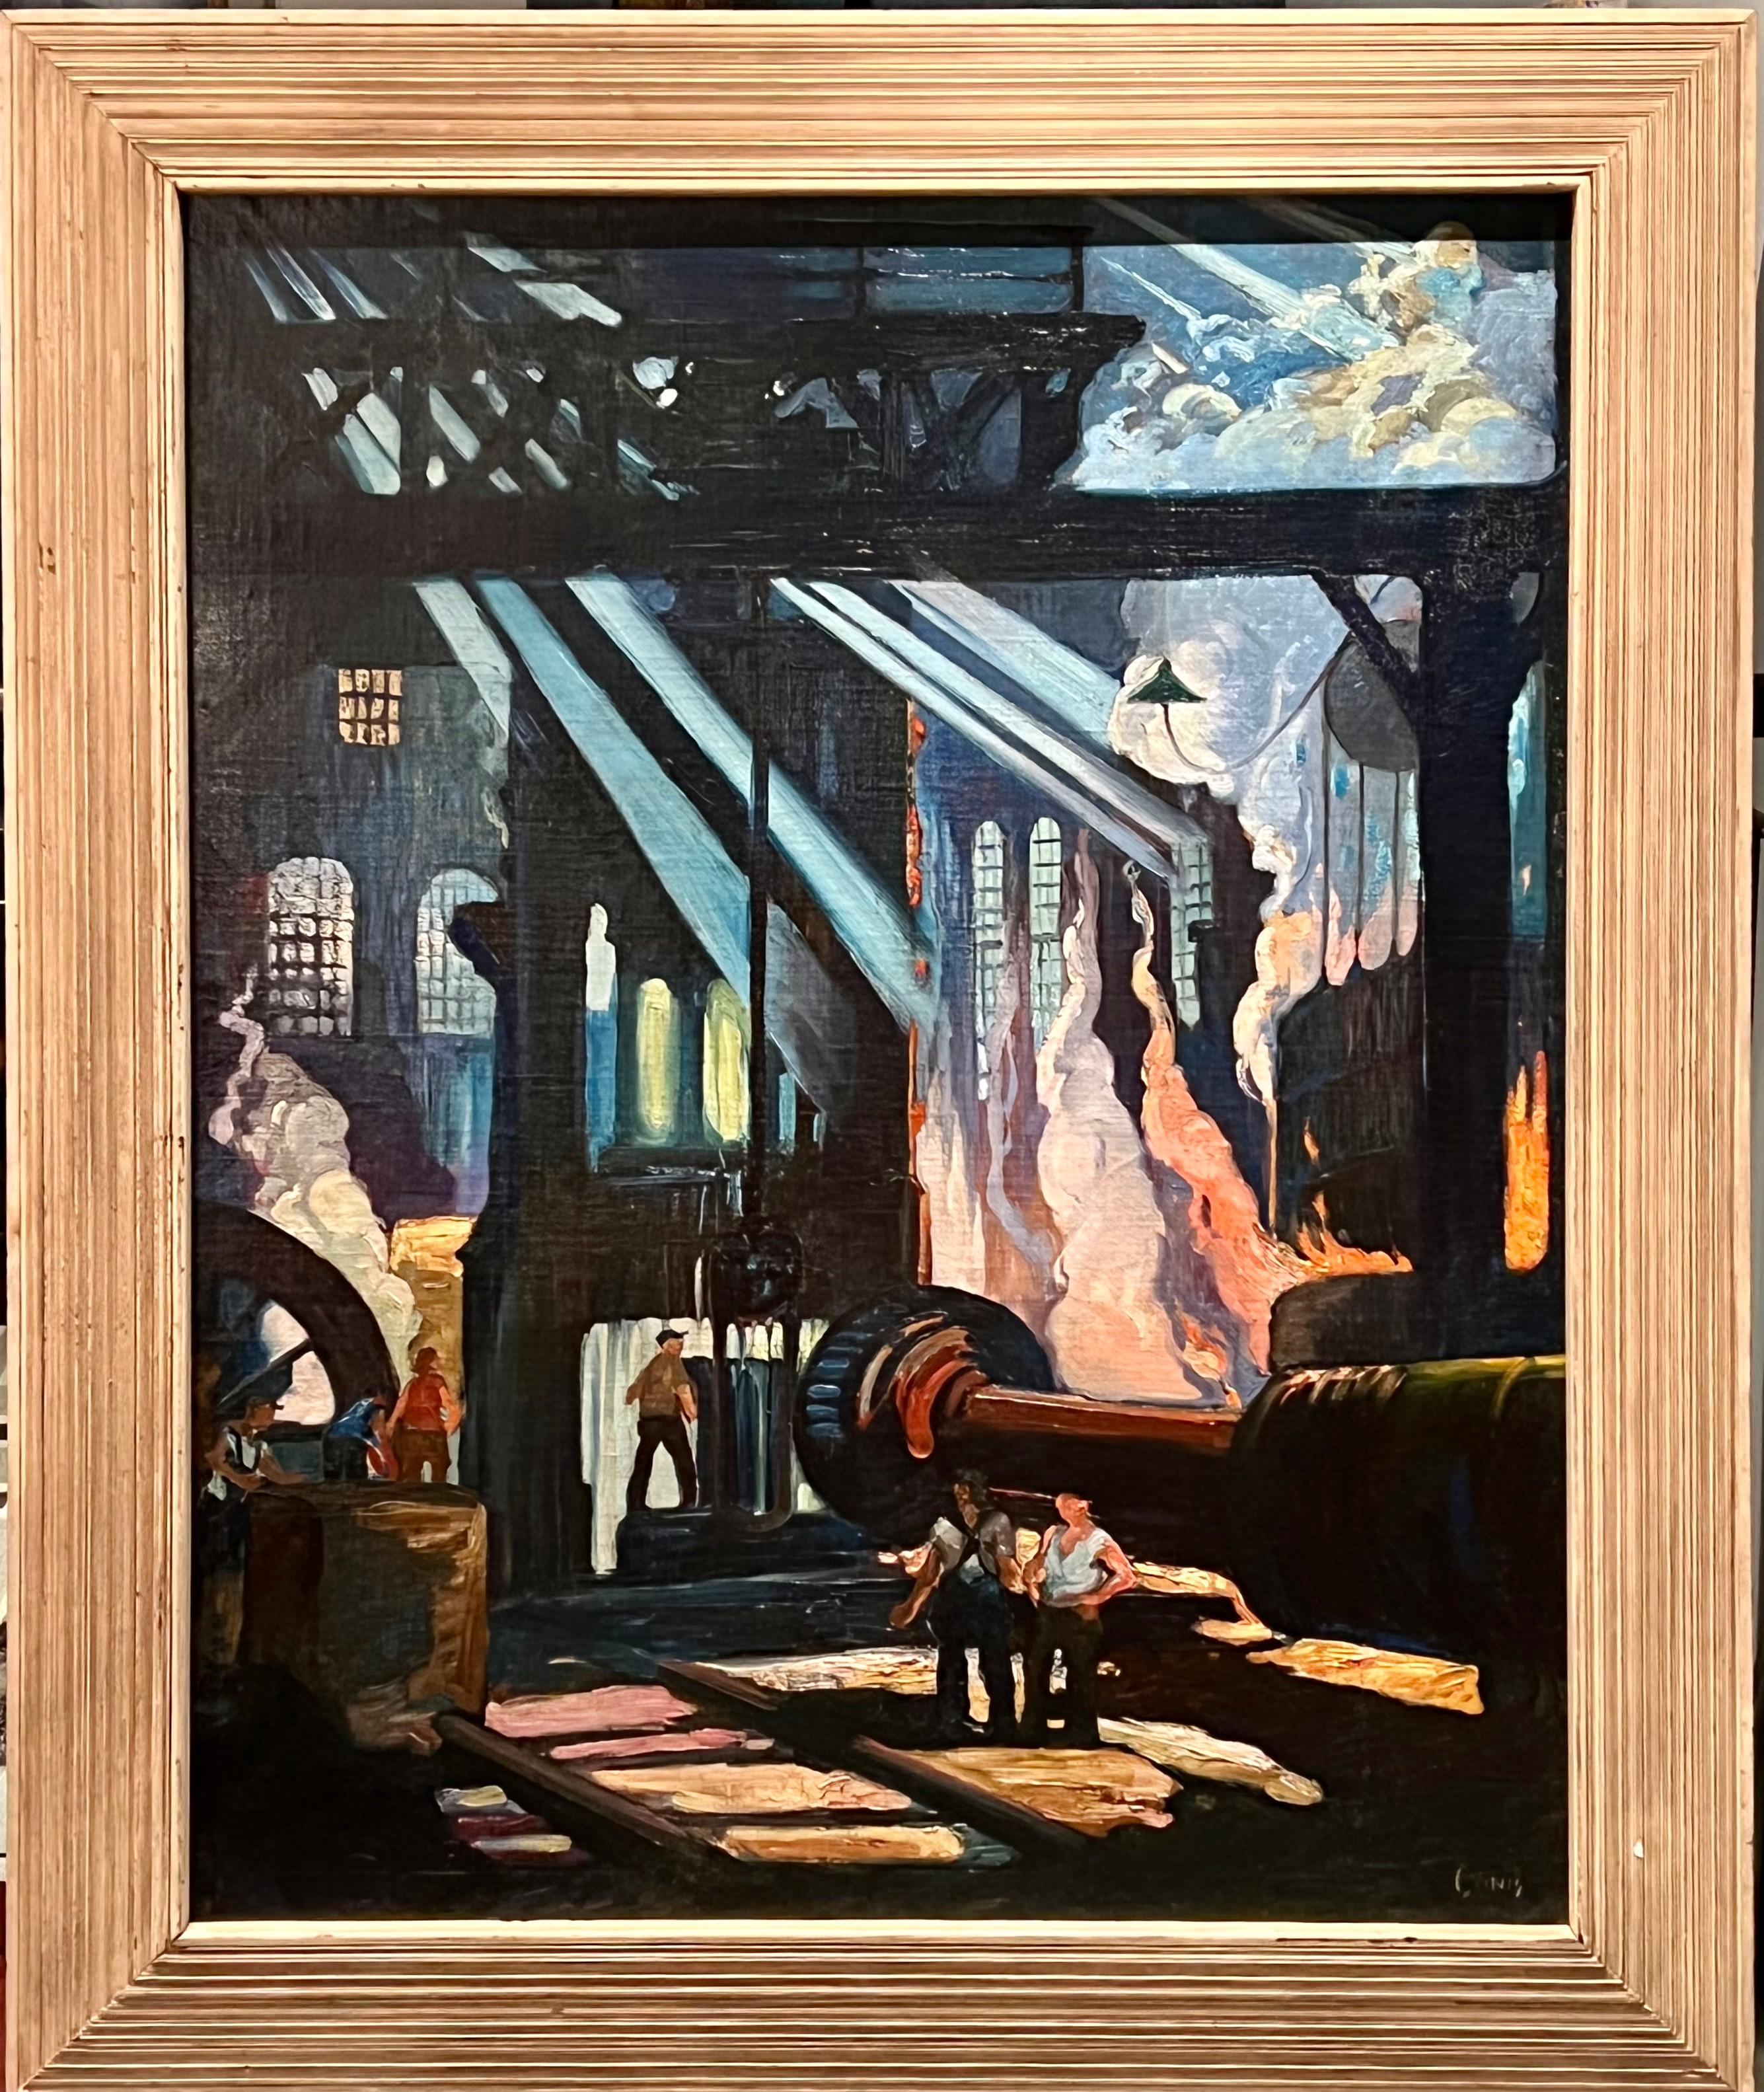 Industrial Mid-20th Century WPA Modern Men Working American Scene Social Realism - Painting by George Pearse Ennis